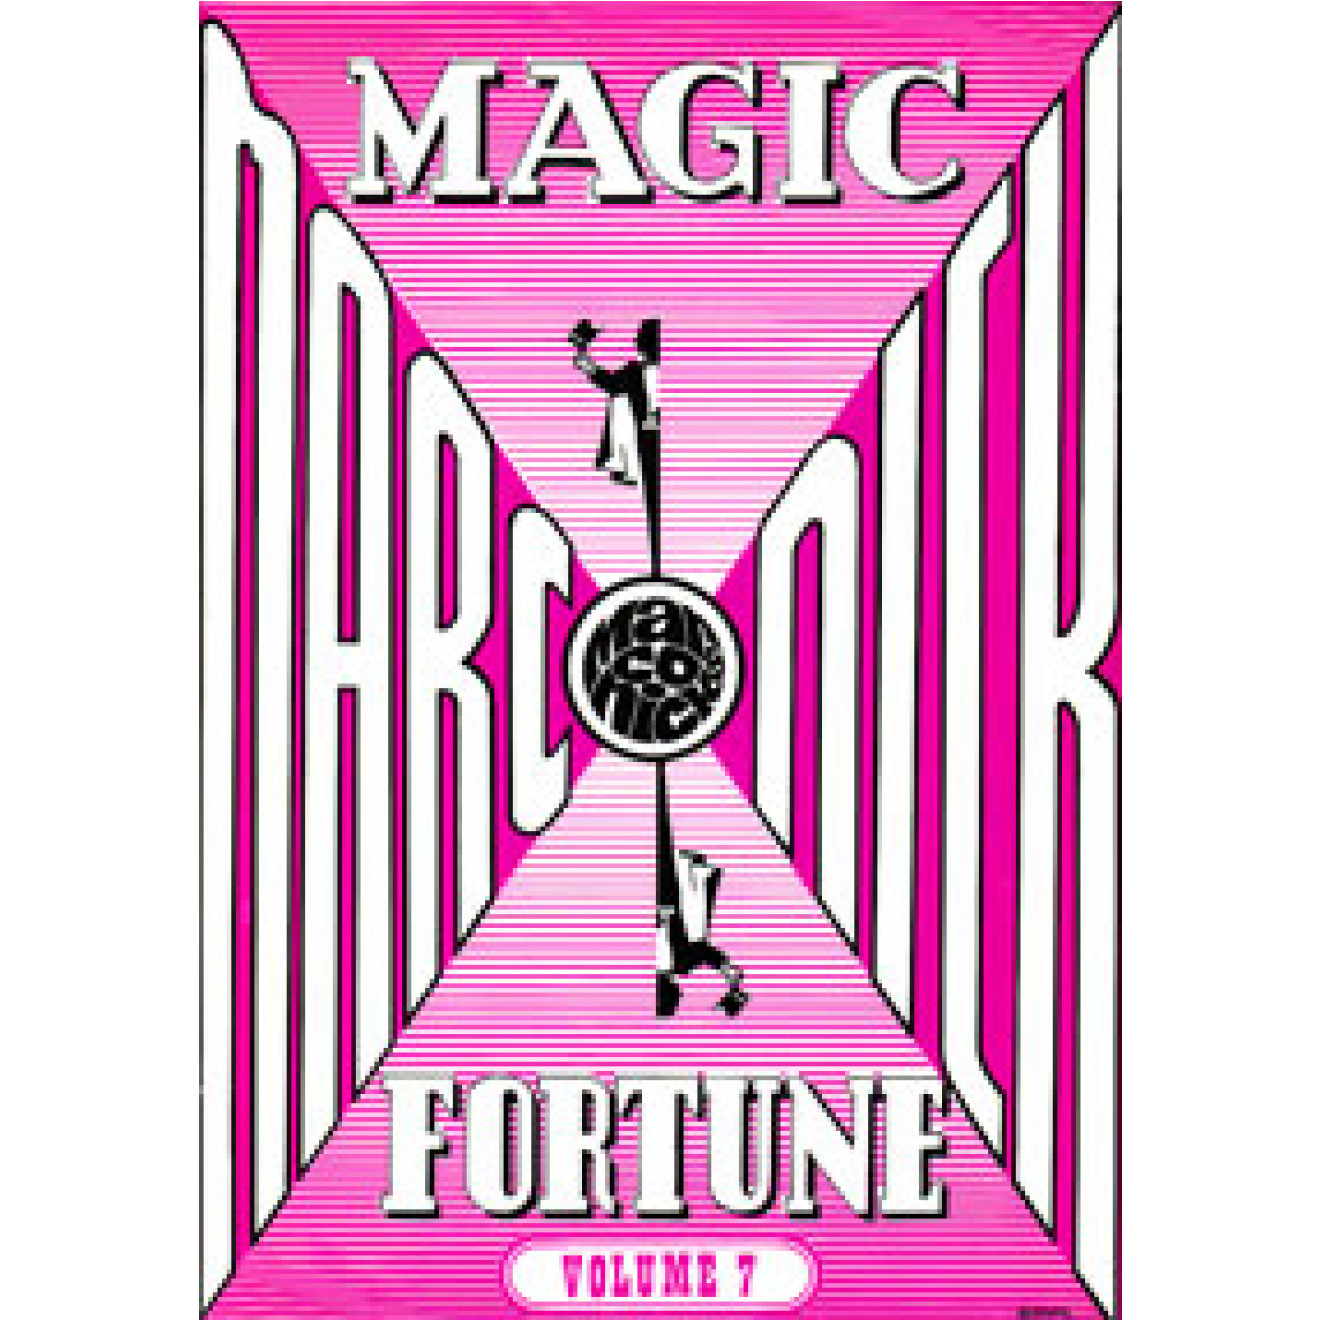 Fortune Magic Volume 7